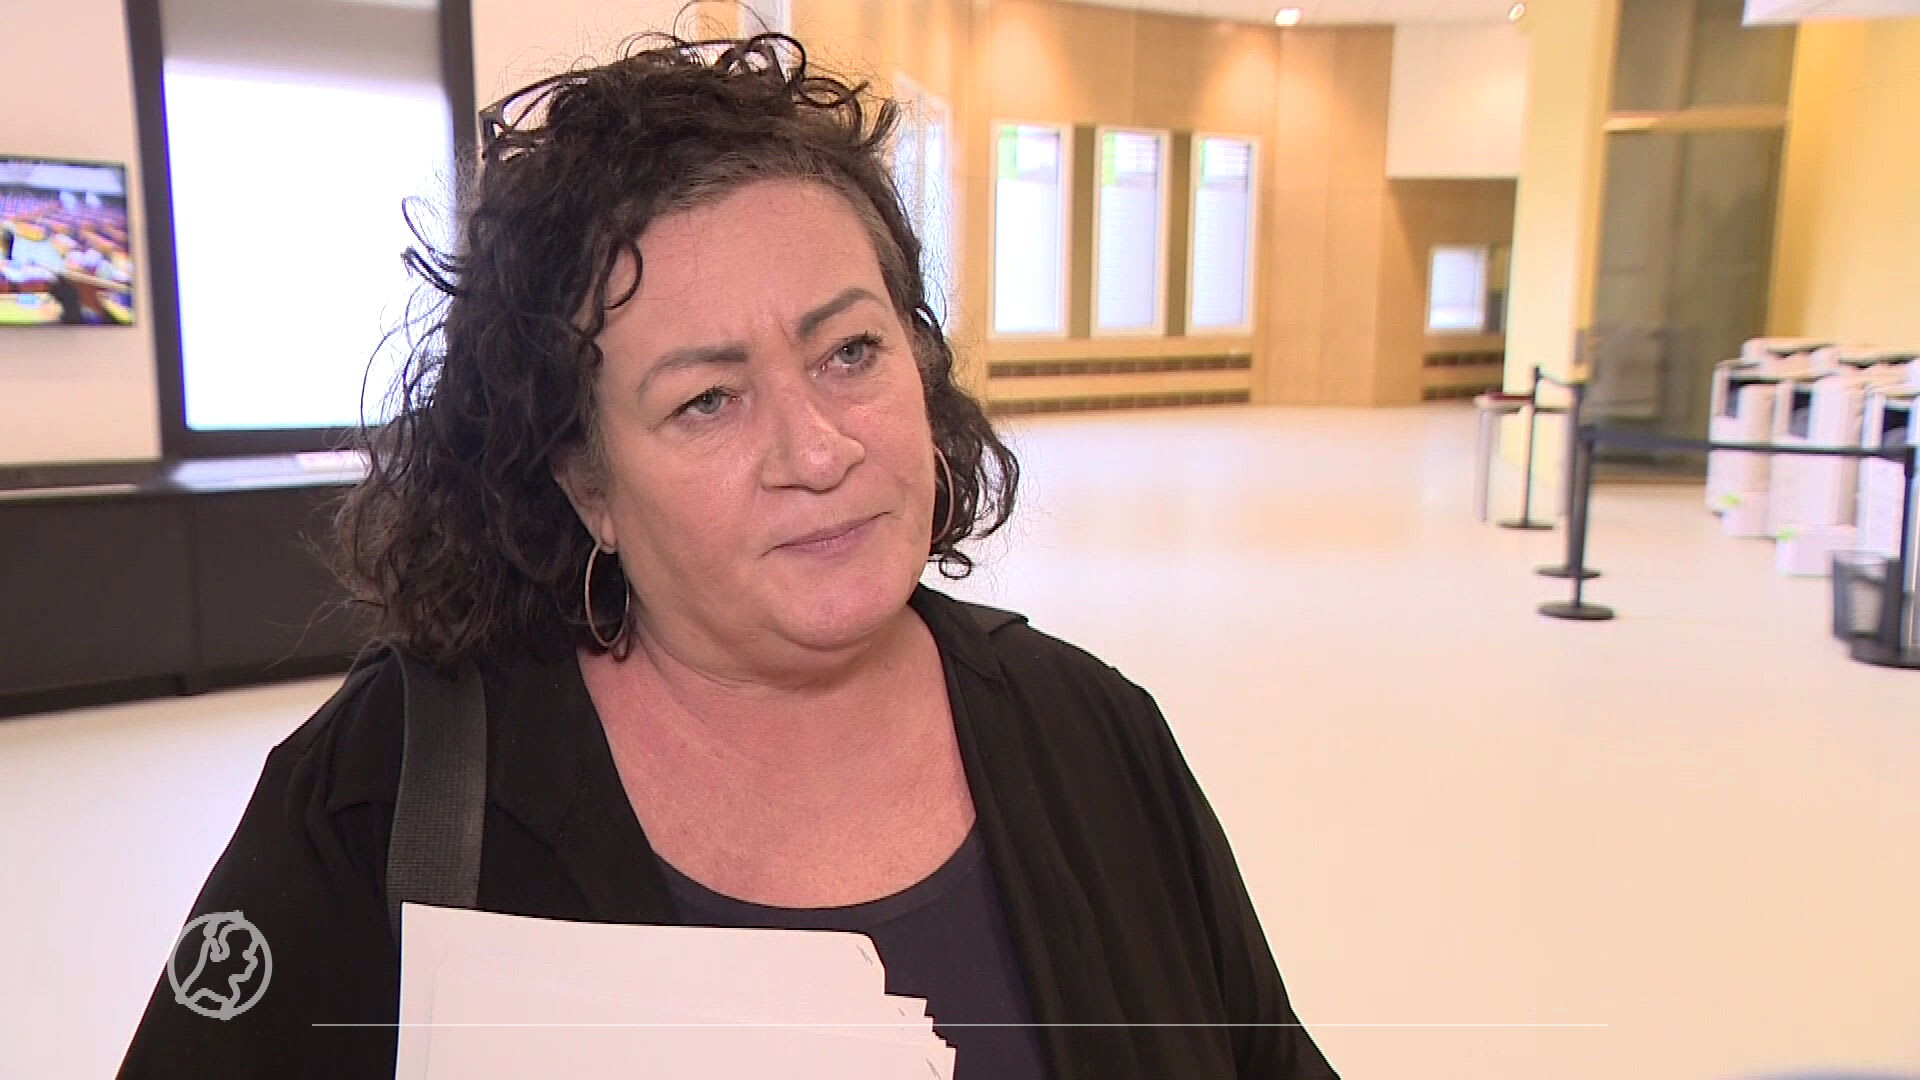 Caroline van der Plas gaat Kamervragen stellen over wolf na aanval in Drenthe